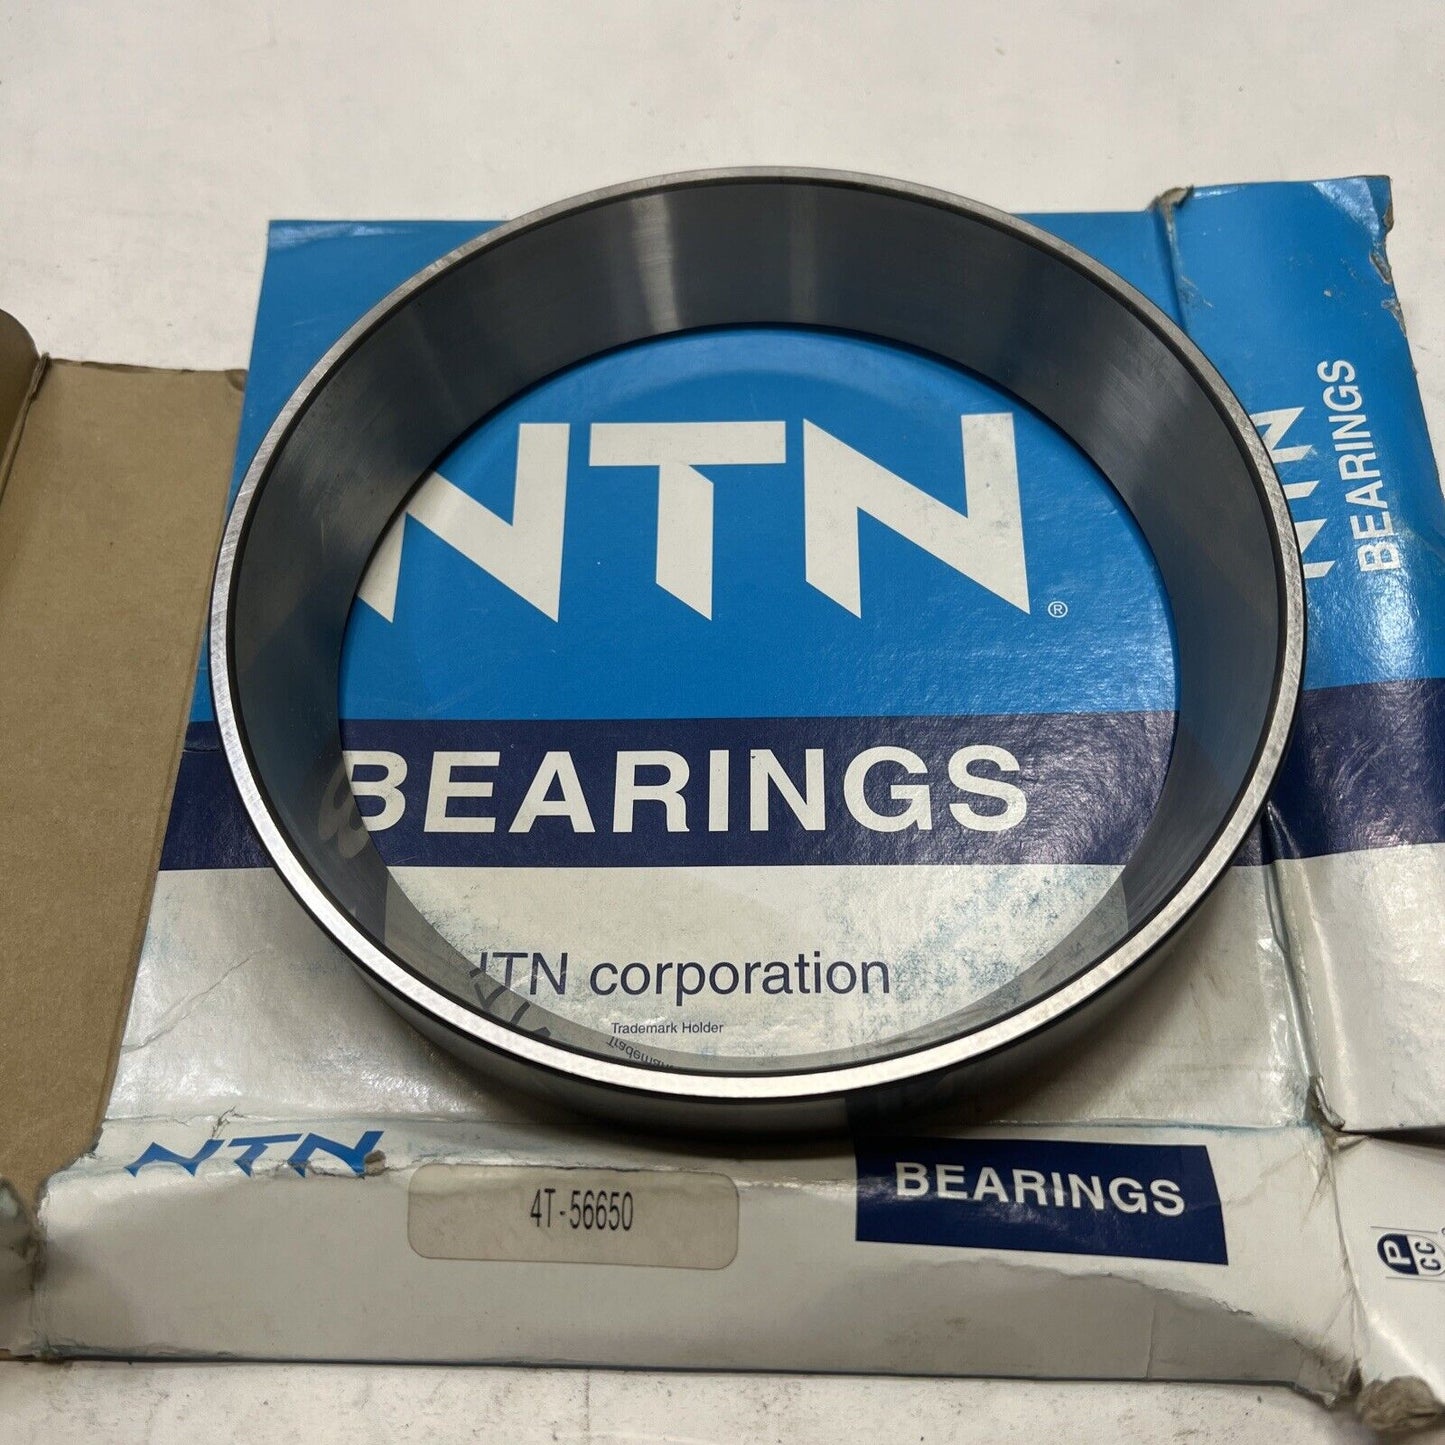 New NTN Bearing 4T56650 NTN New Taper